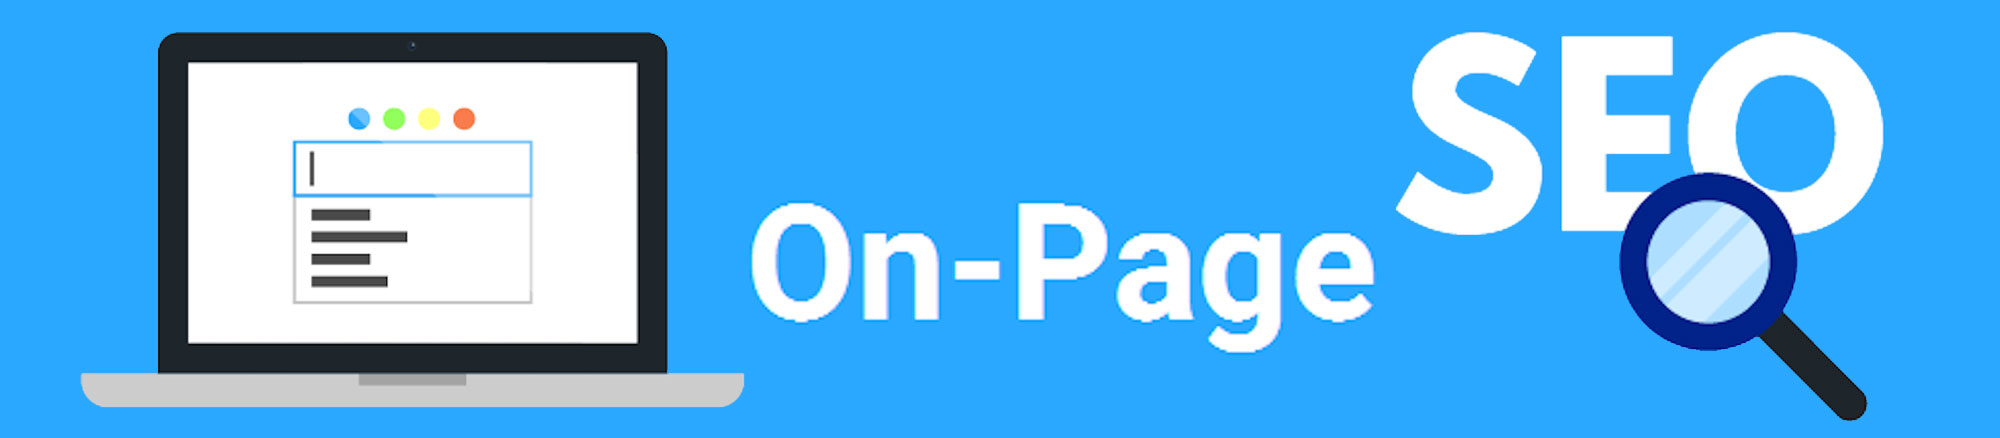 onpage optimization tool gurgaon